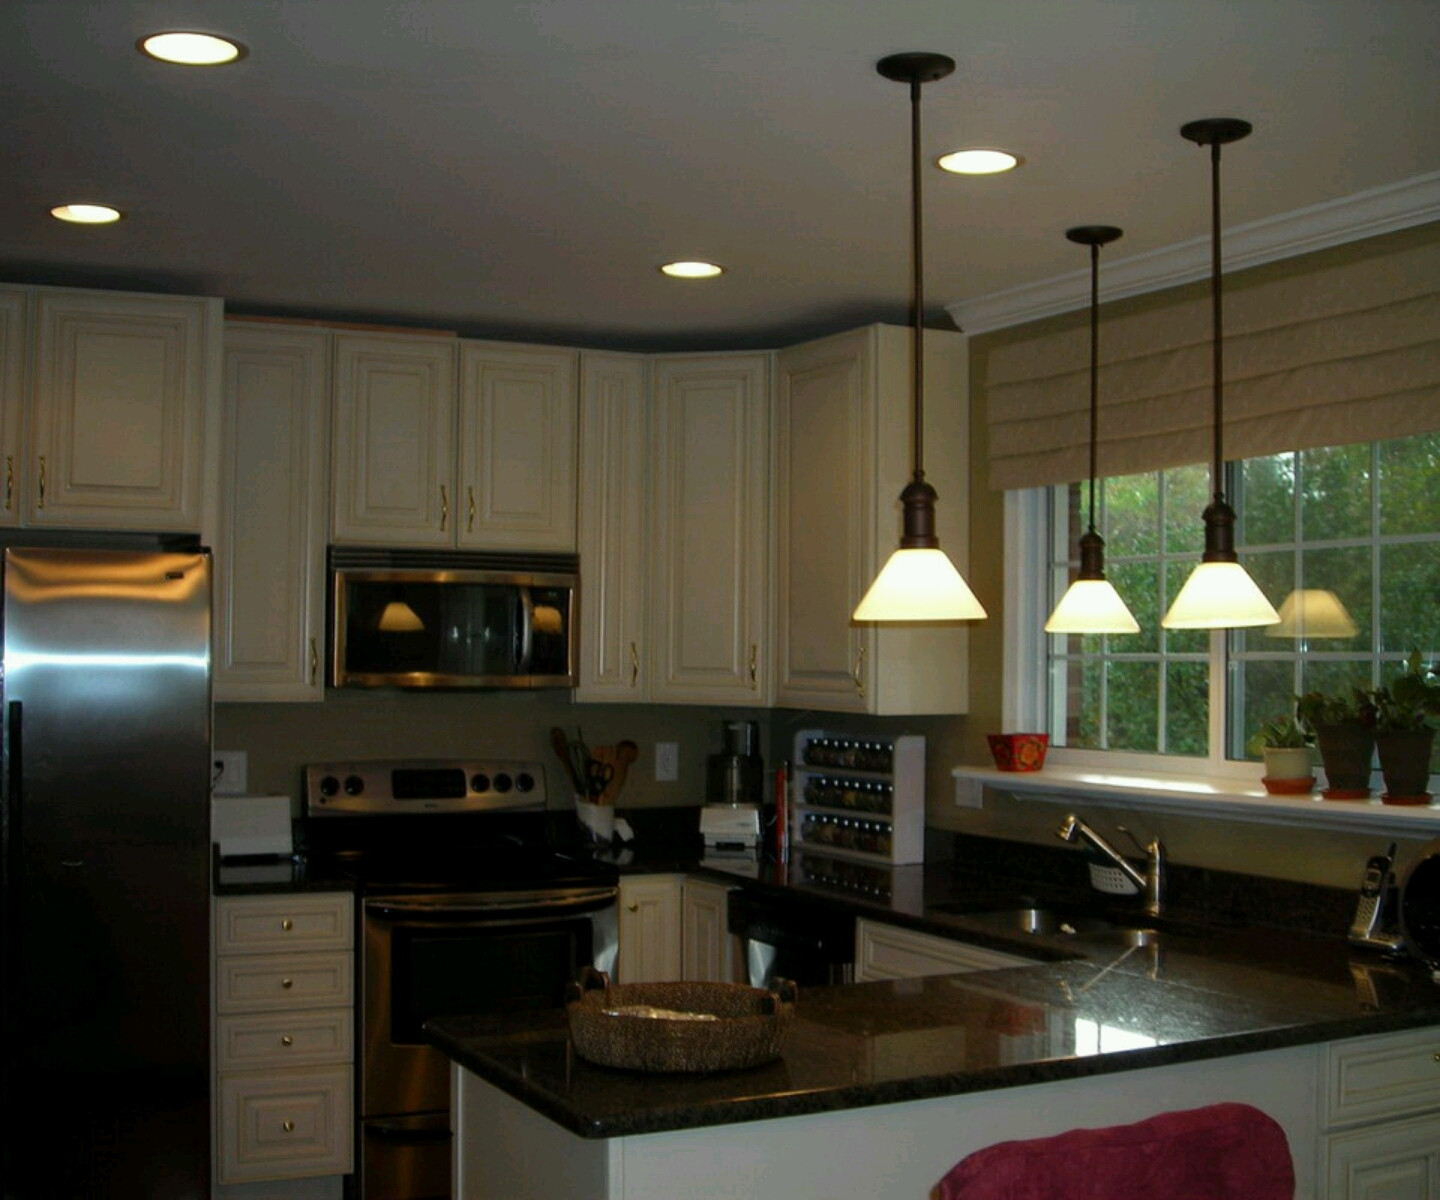 Modern Kitchen Cabinet Design Photos
 New home designs latest Modern home kitchen cabinet